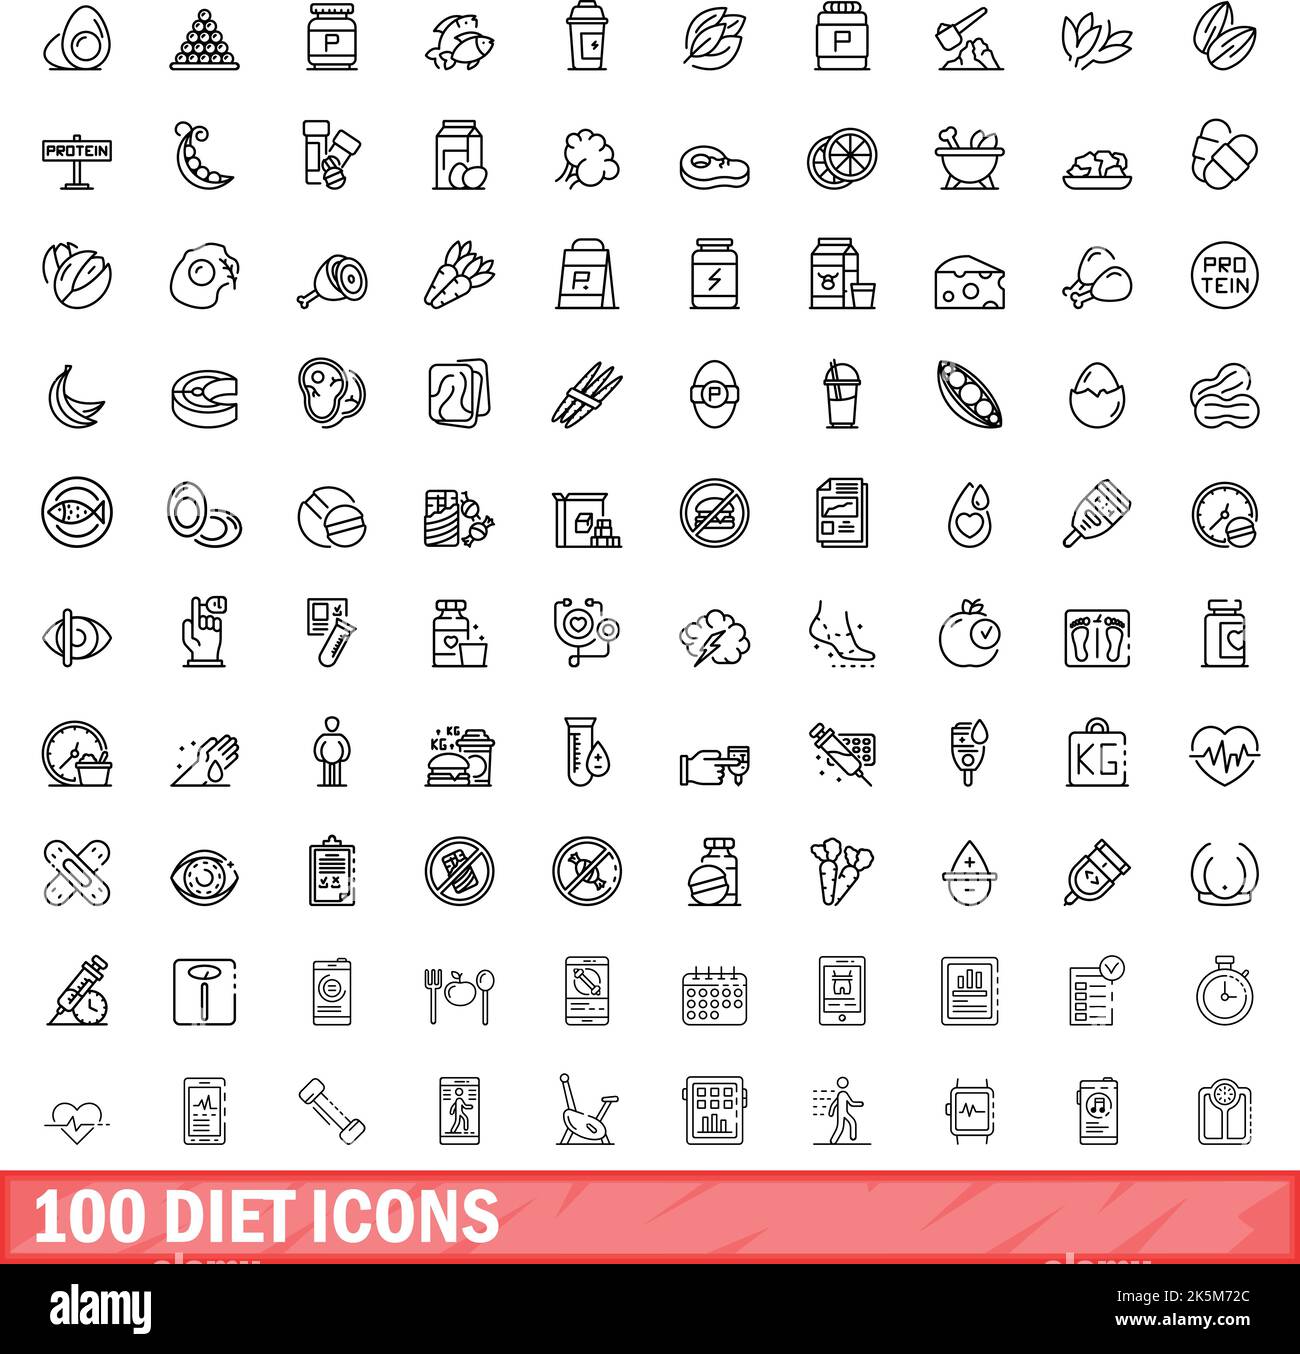 ensemble de 100 icônes de régime. Illustration de 100 icônes de régime ensemble de vecteurs isolés sur fond blanc Illustration de Vecteur